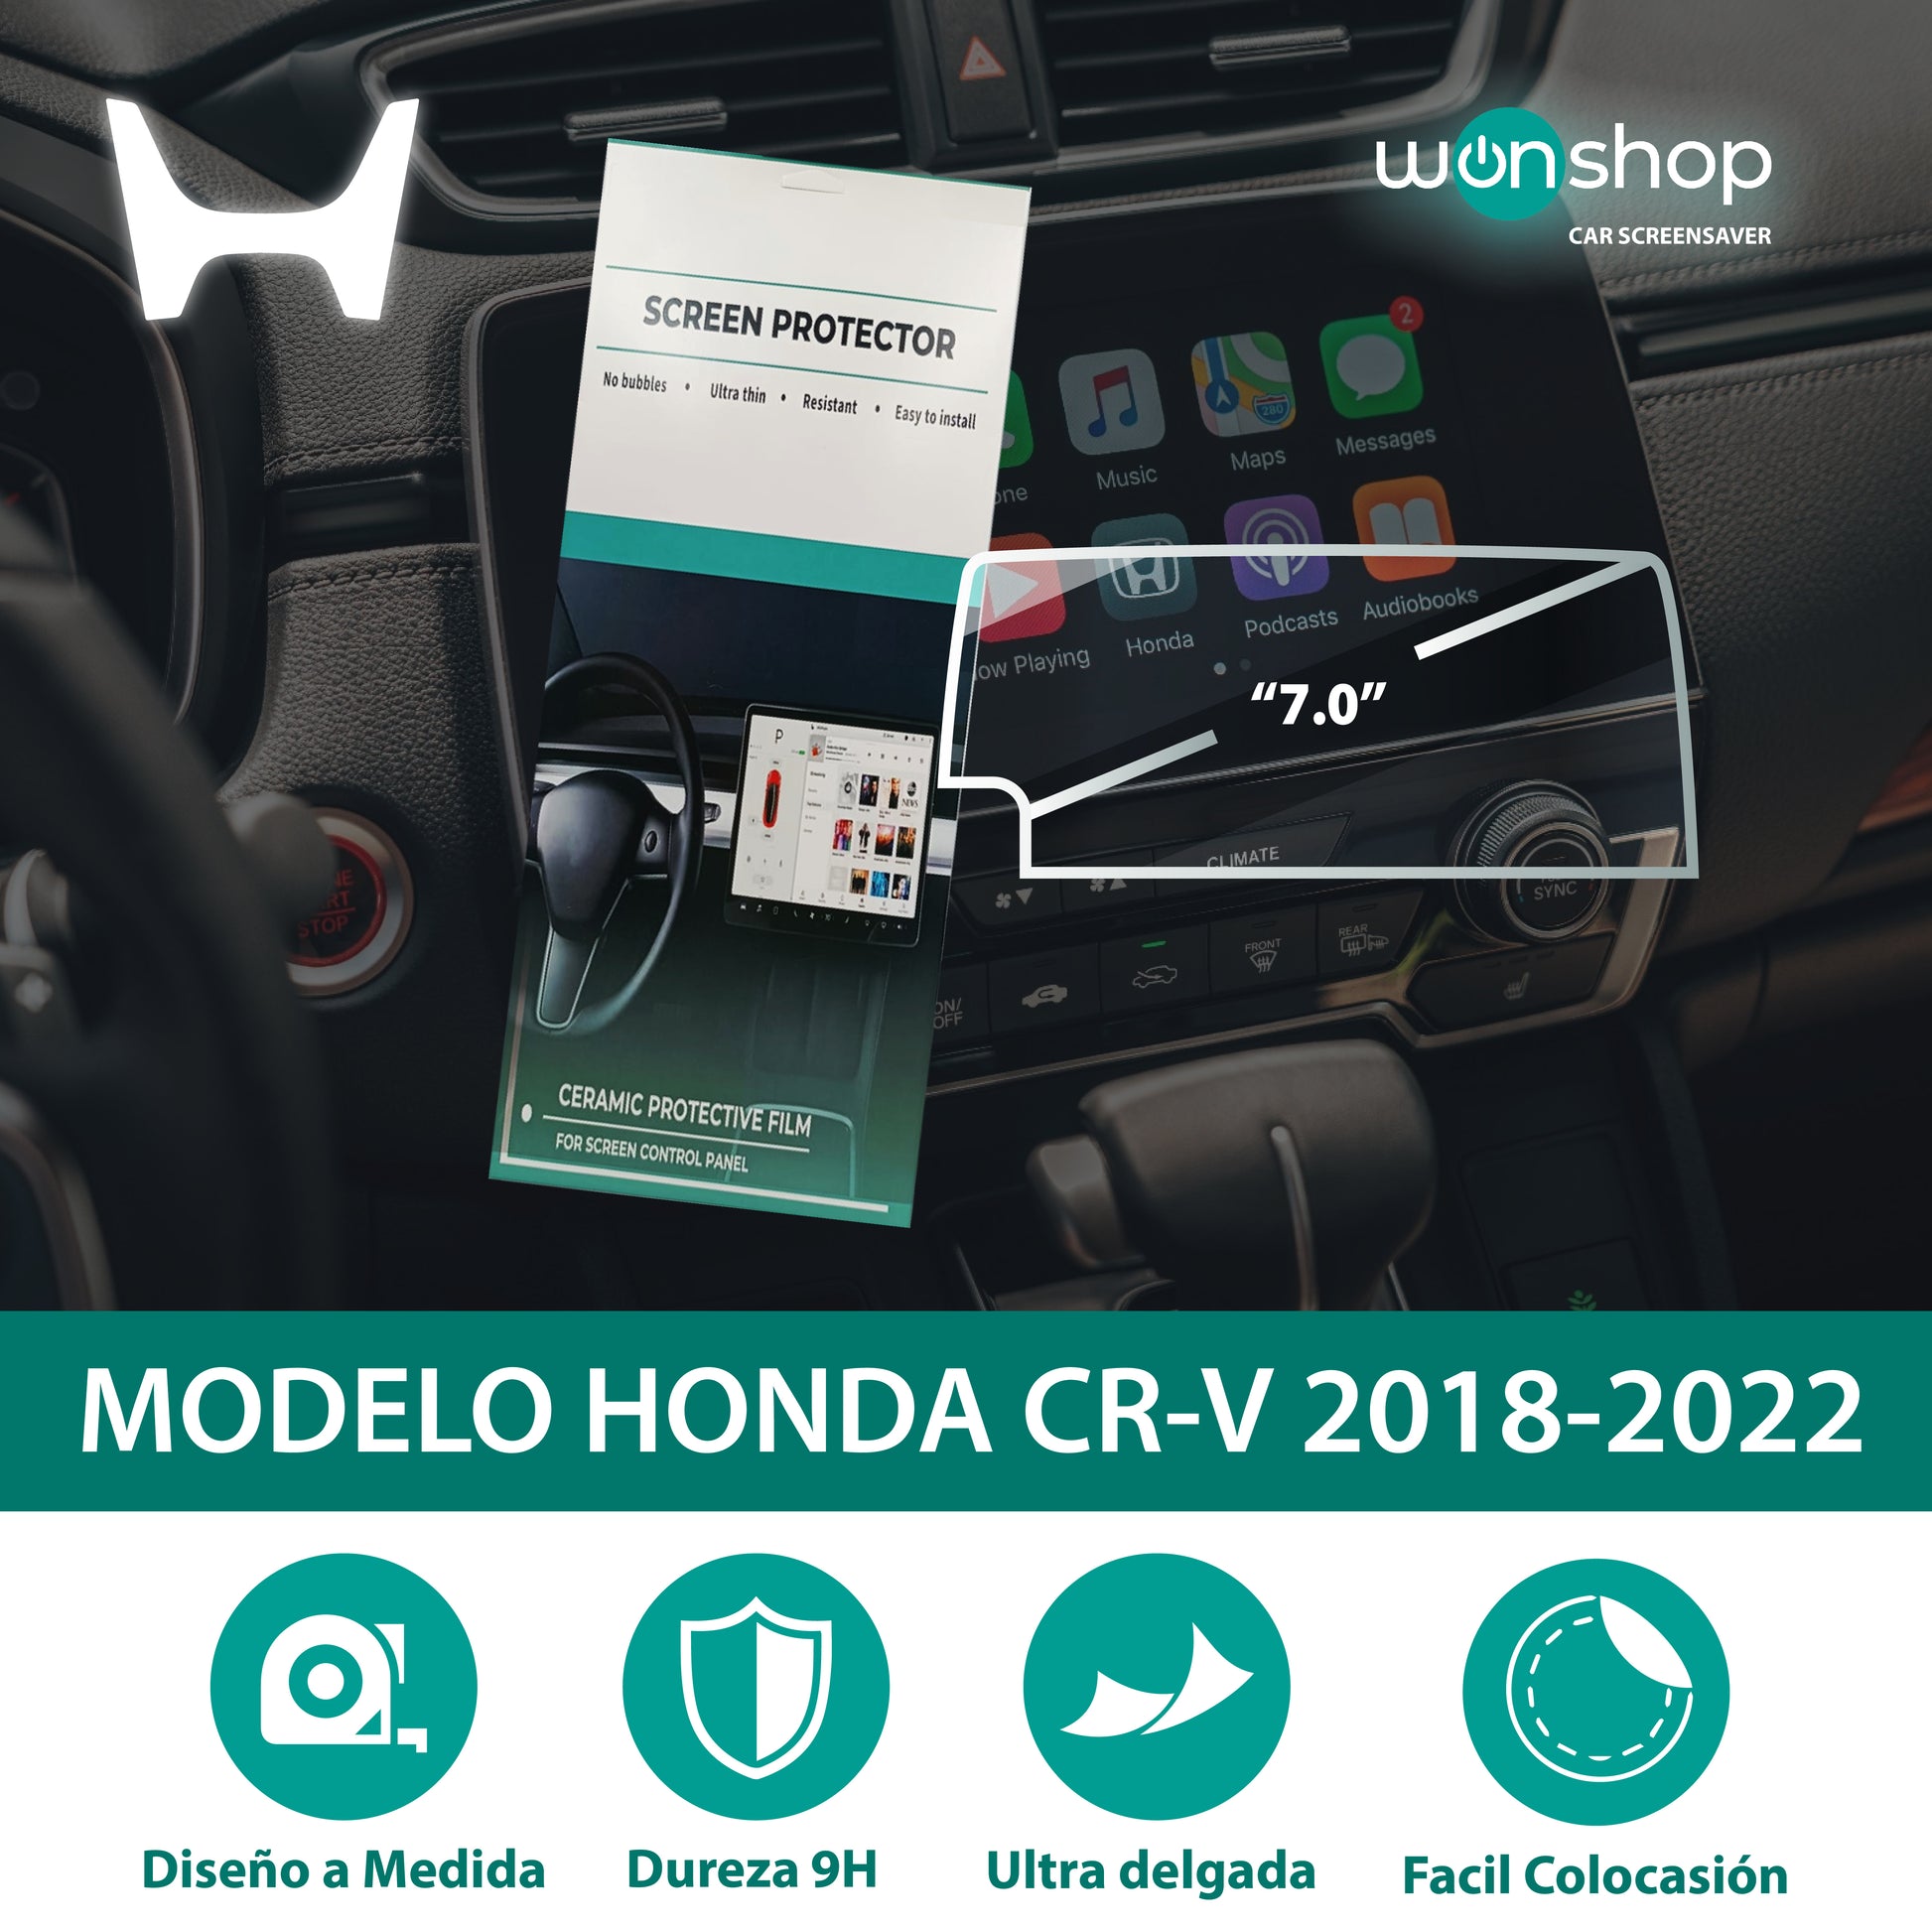 Protector de pantalla táctil para autos Honda - wonshop.mx